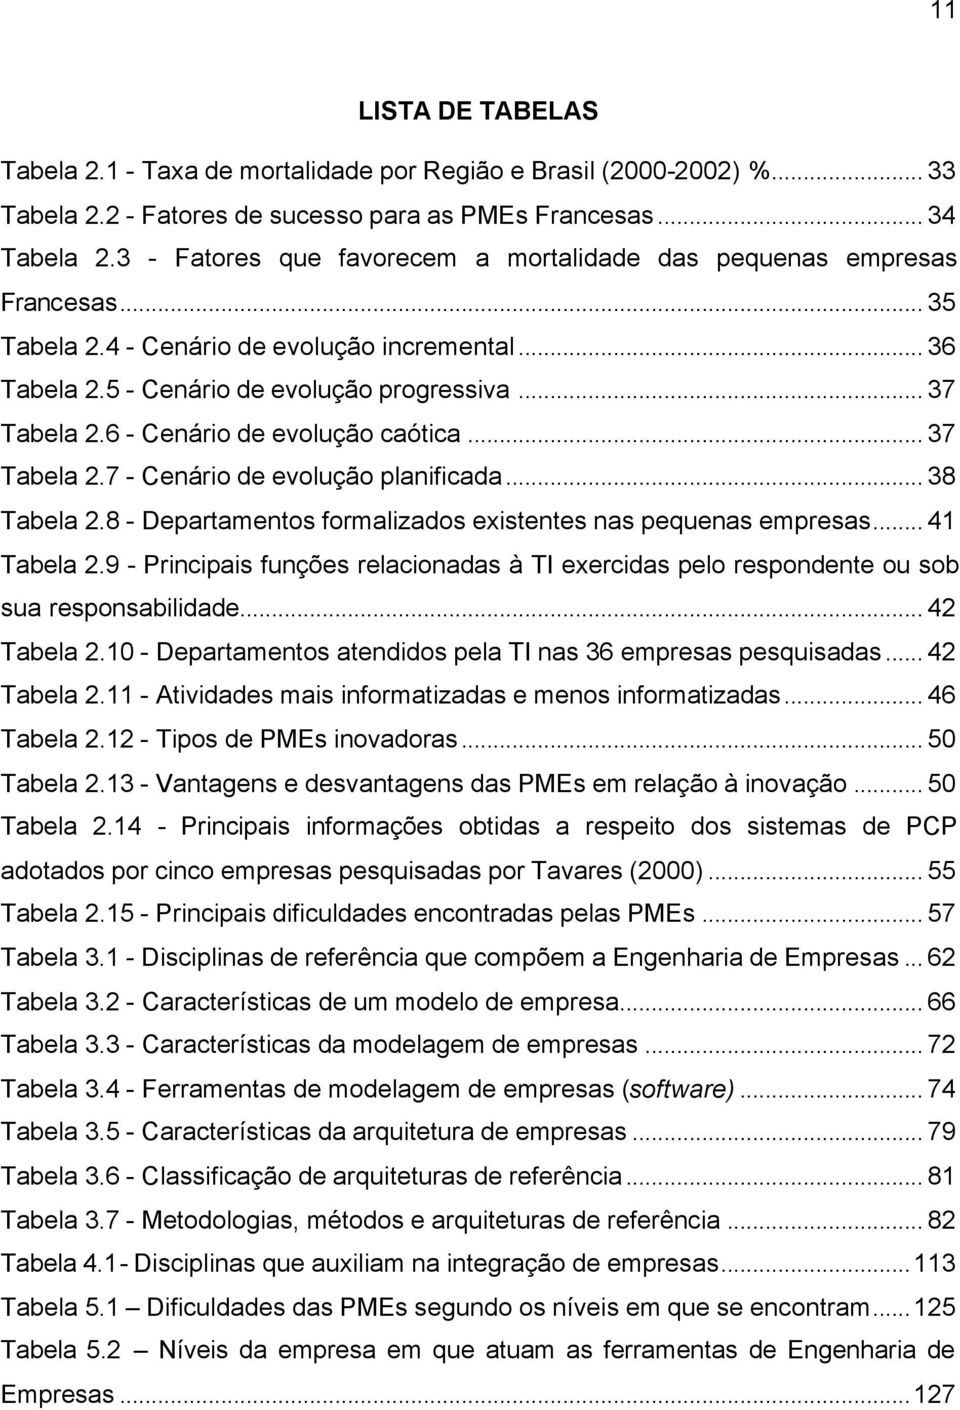 6 - Cenário de evolução caótica... 37 Tabela 2.7 - Cenário de evolução planificada... 38 Tabela 2.8 - Departamentos formalizados existentes nas pequenas empresas... 41 Tabela 2.